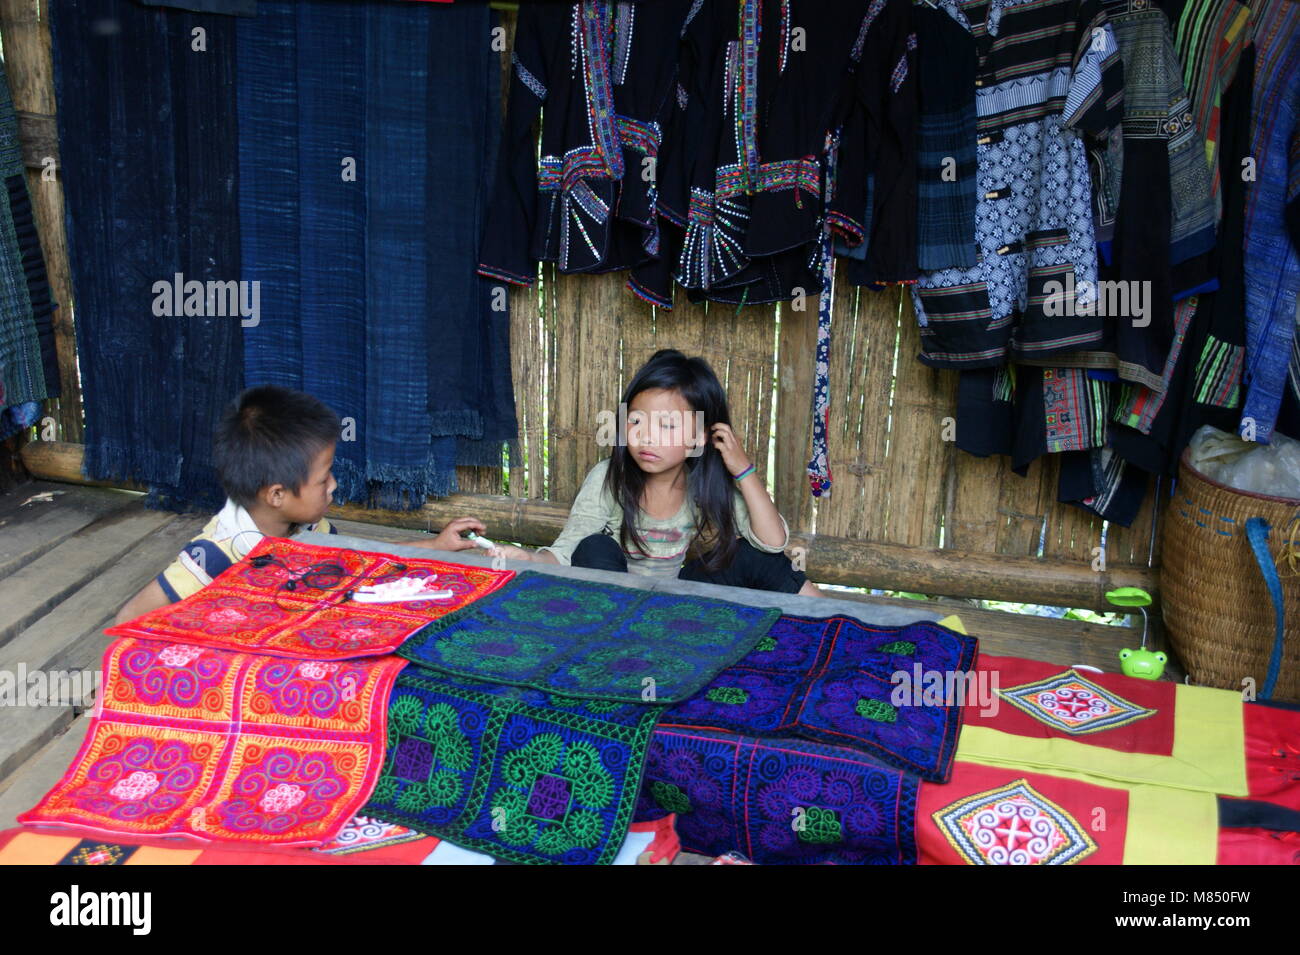 Vietnamesische Kinder im Souvenirshop der Eltern. Die Vertreter der nationalen Minderheiten in Vietnam. Sapa, Vietnam, Lao Cai Provinz Asien. Stockfoto